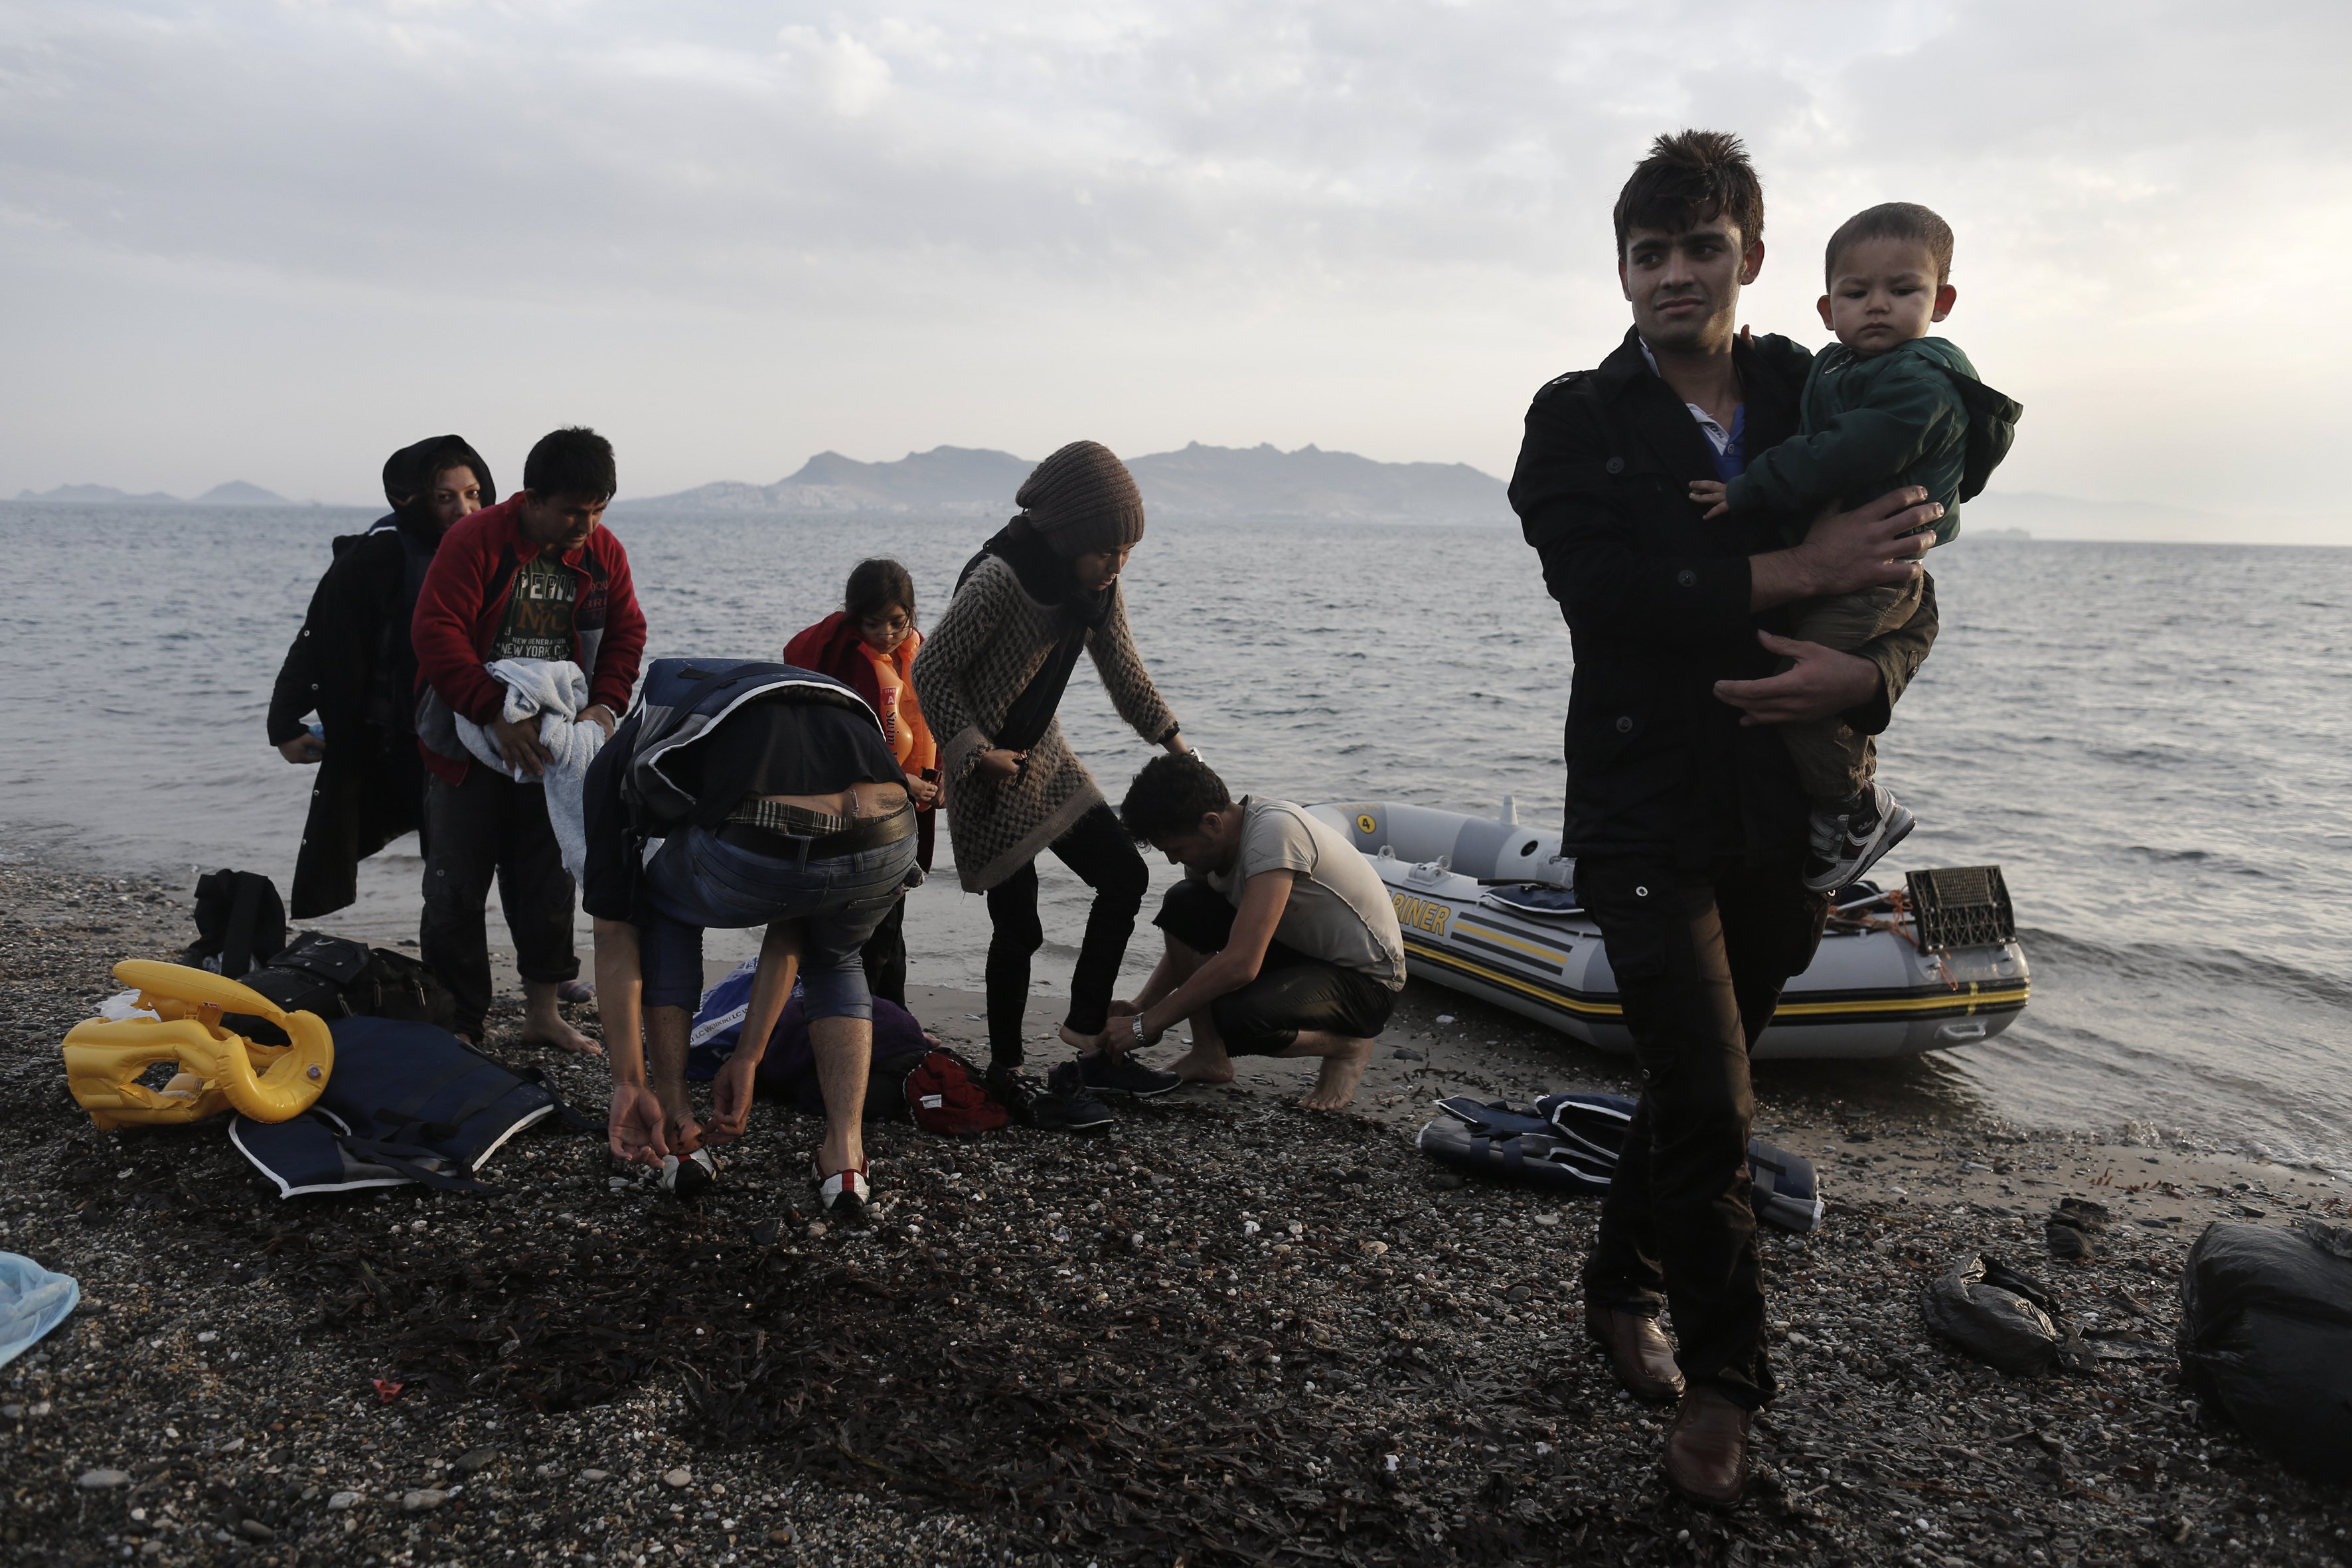 Λέσβος: Για πρώτη φορά σημειώνονται μηδενικές ροές μεταναστών και προσφύγων μετά από πολλούς μήνες